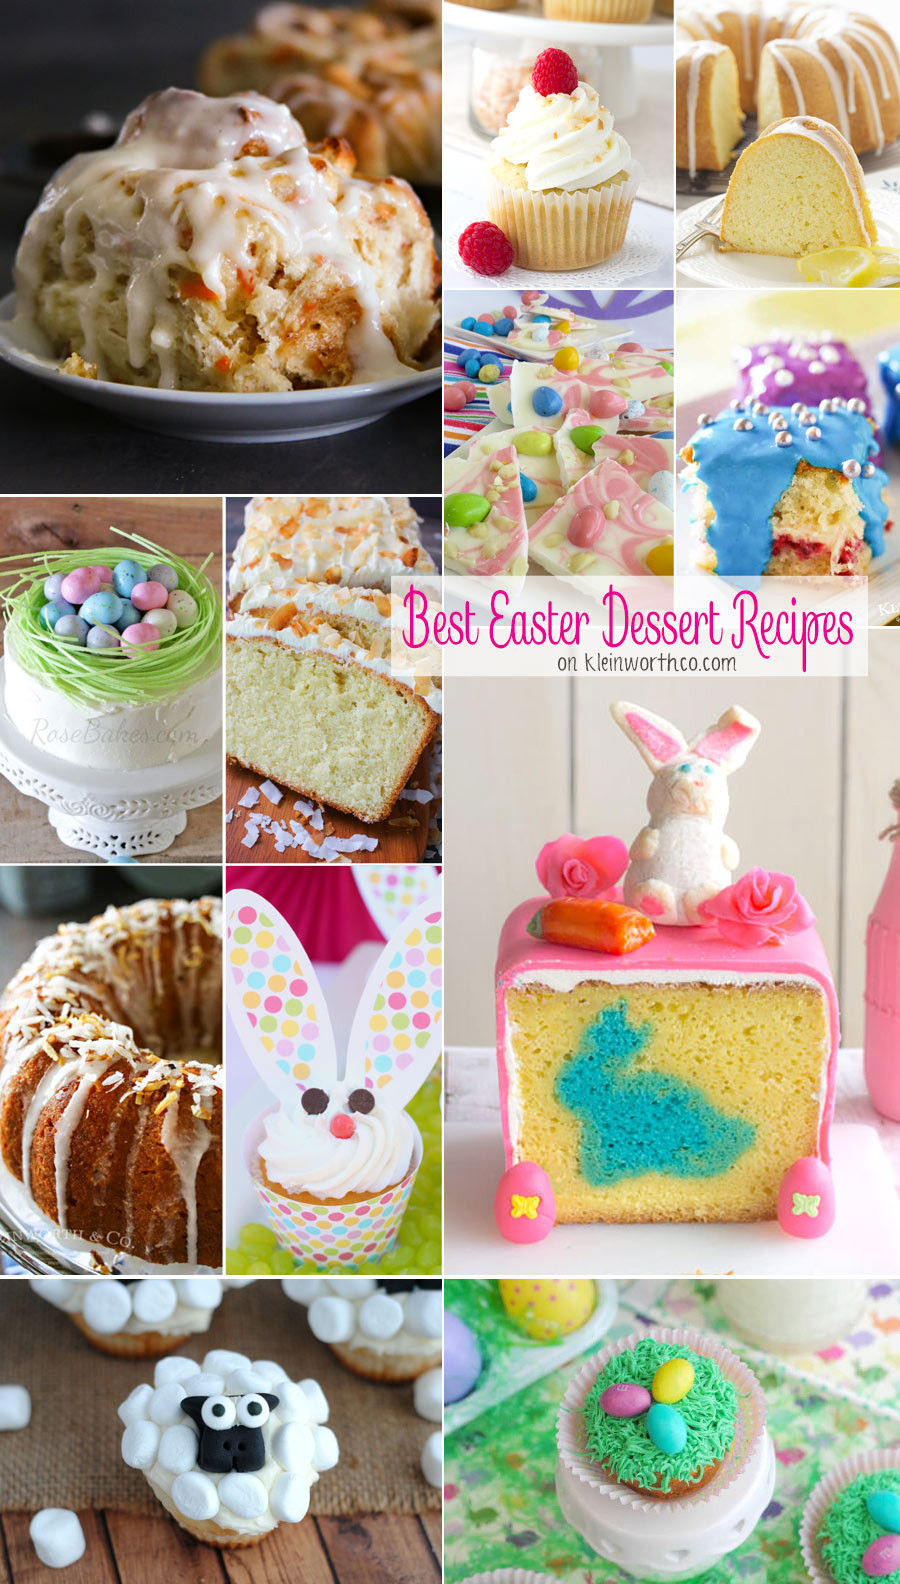 Best Easter Desserts
 Best Easter Dessert Recipes Kleinworth & Co